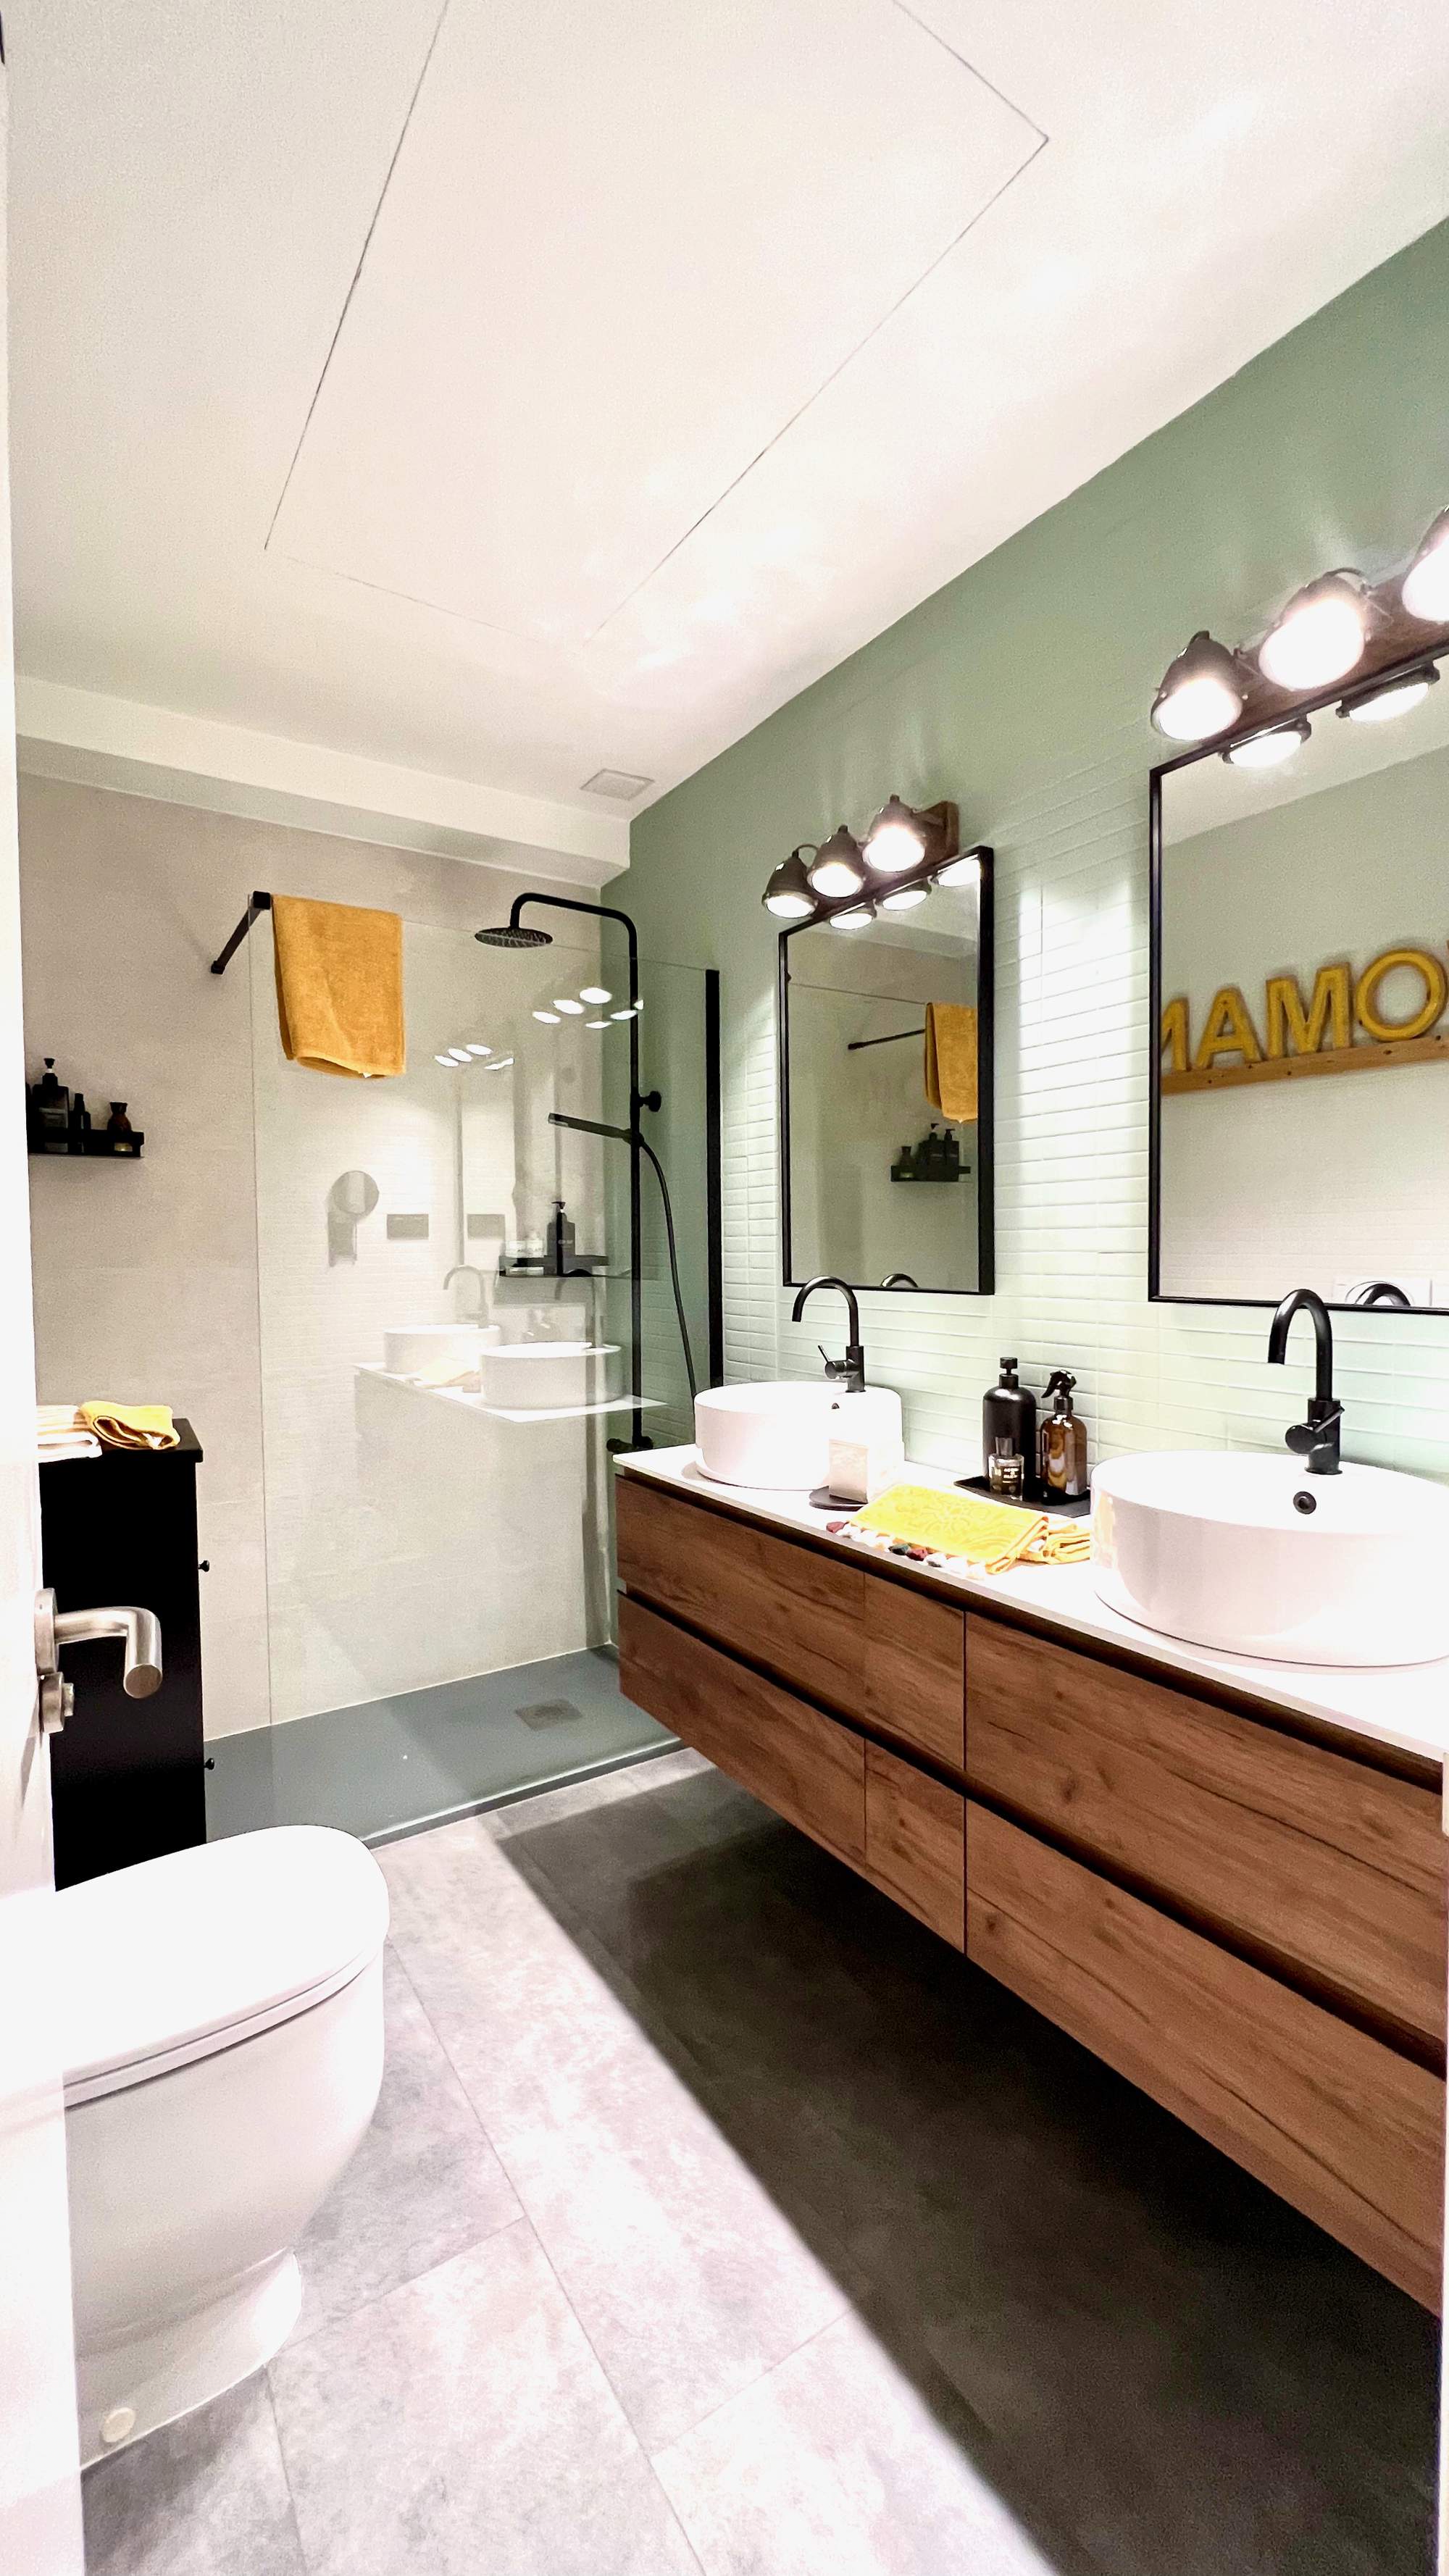 Baño con espejos iluminados, mueble con doble lavabo de madera y ducha al fondo.